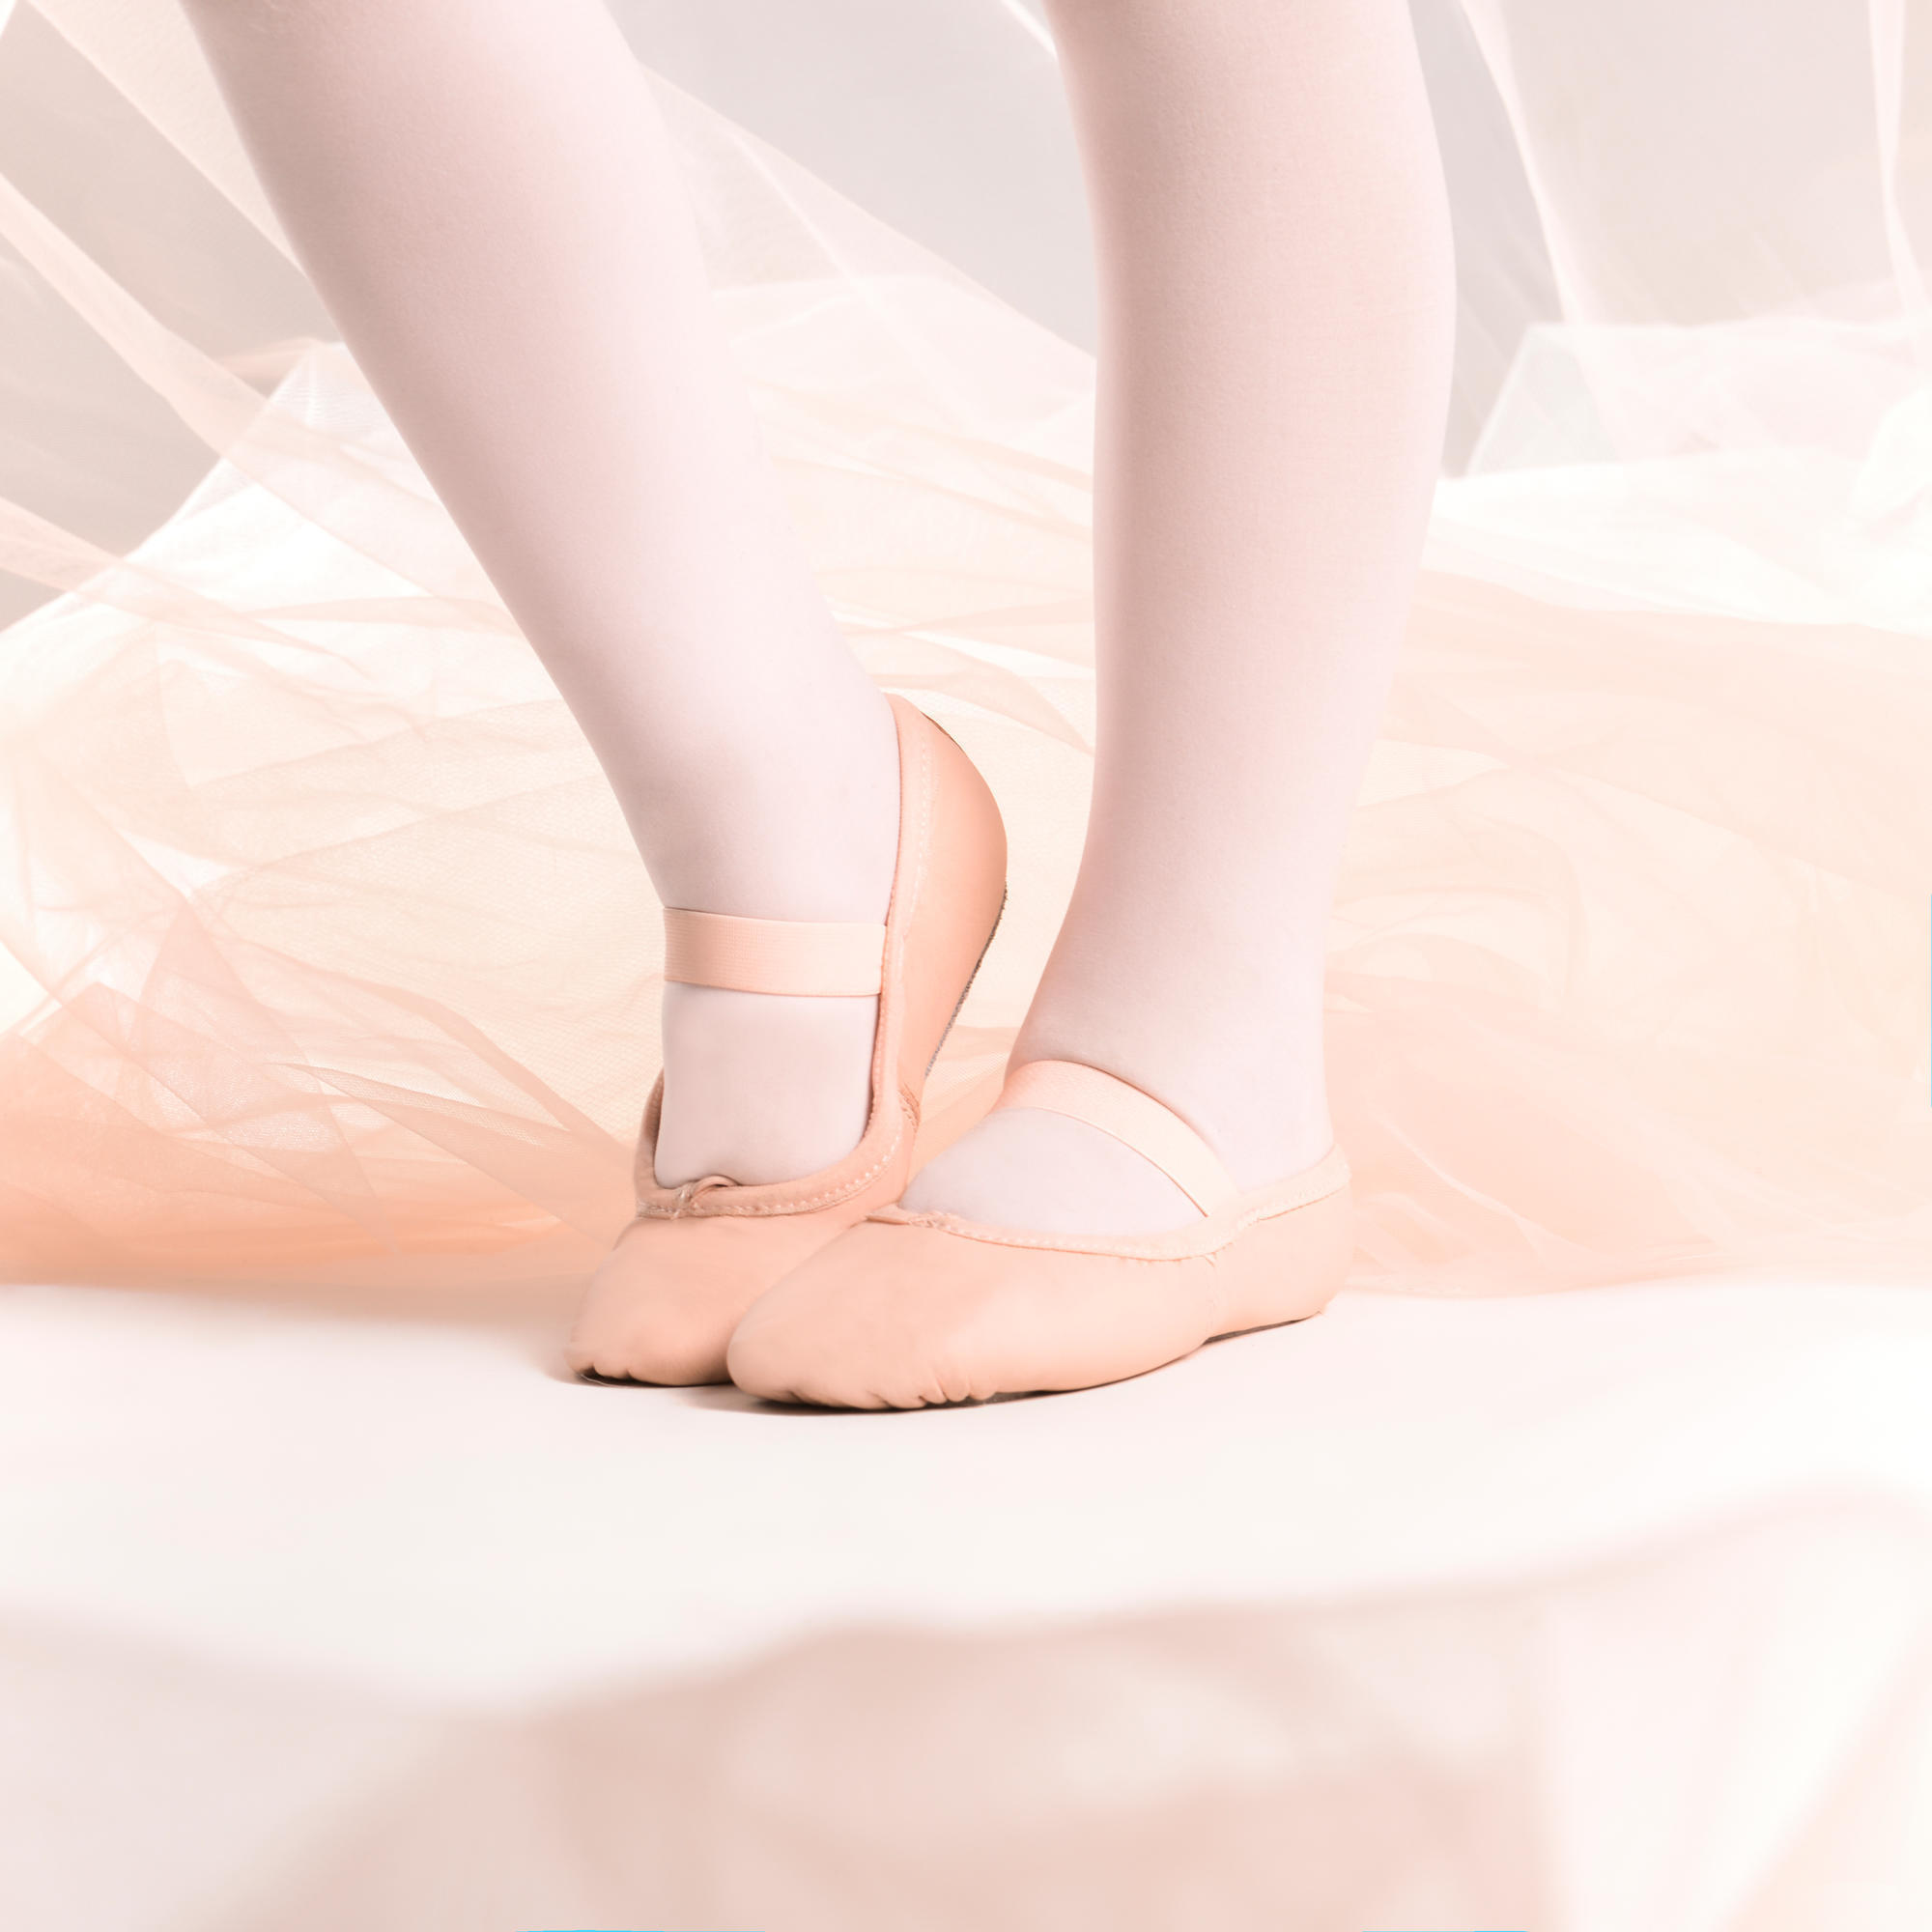 Demi-poante balet piele talpă întreagă roz mărimile 25-40